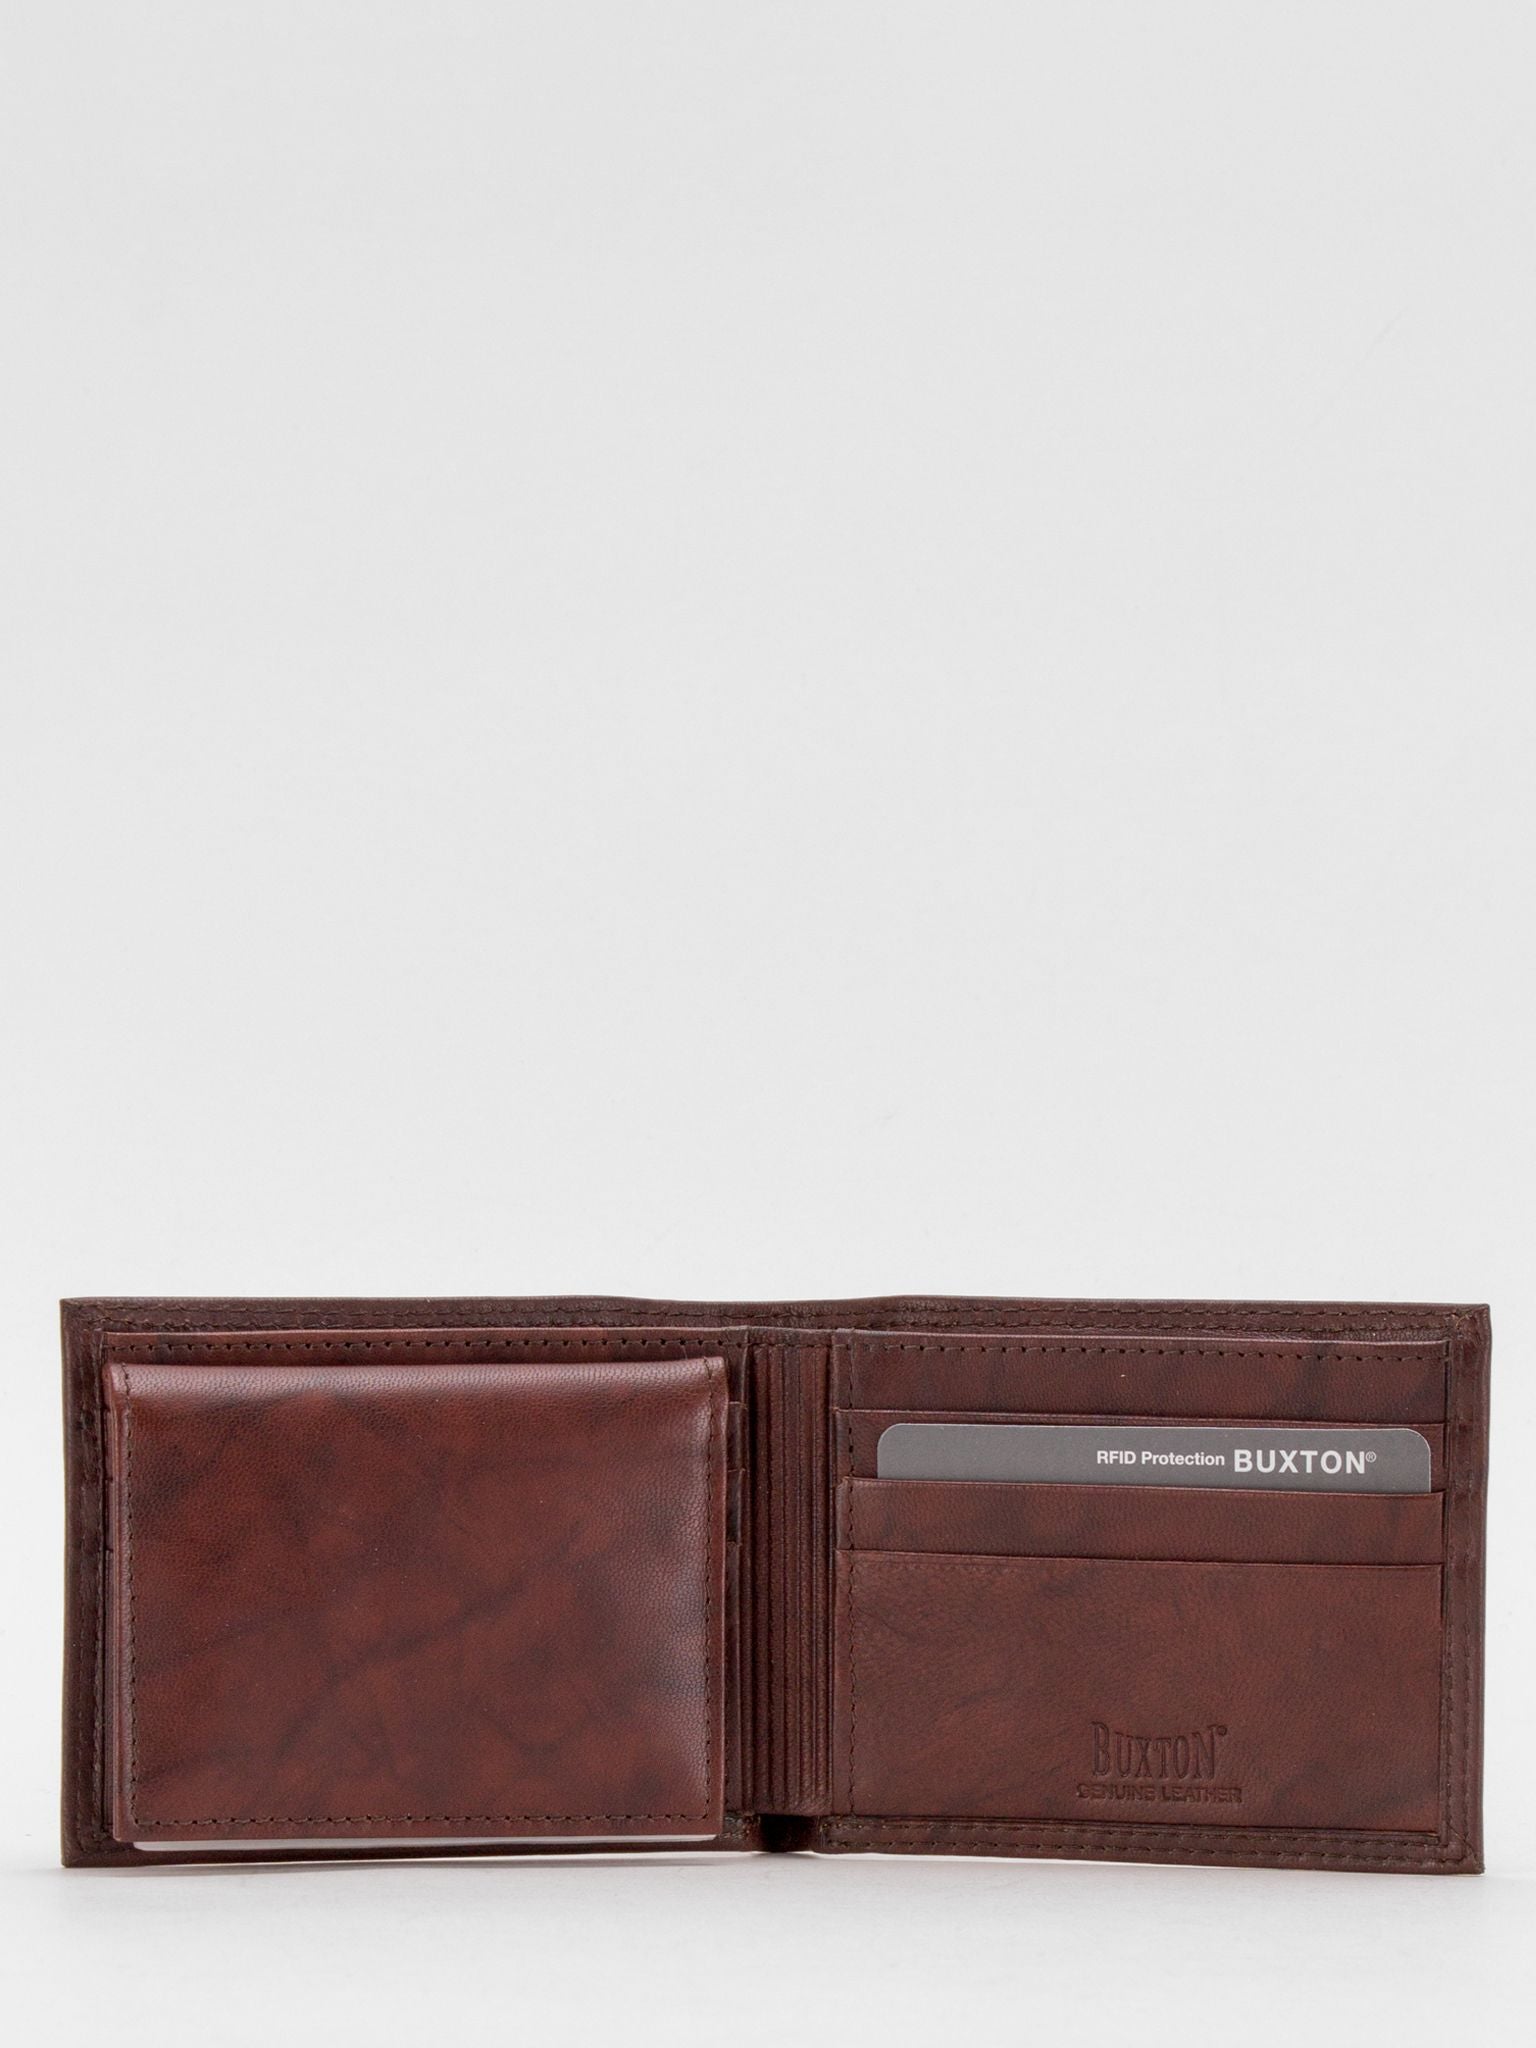 BUXTON Stanley RFID Blocking Passcase Leather Billfold (Medium Brown)